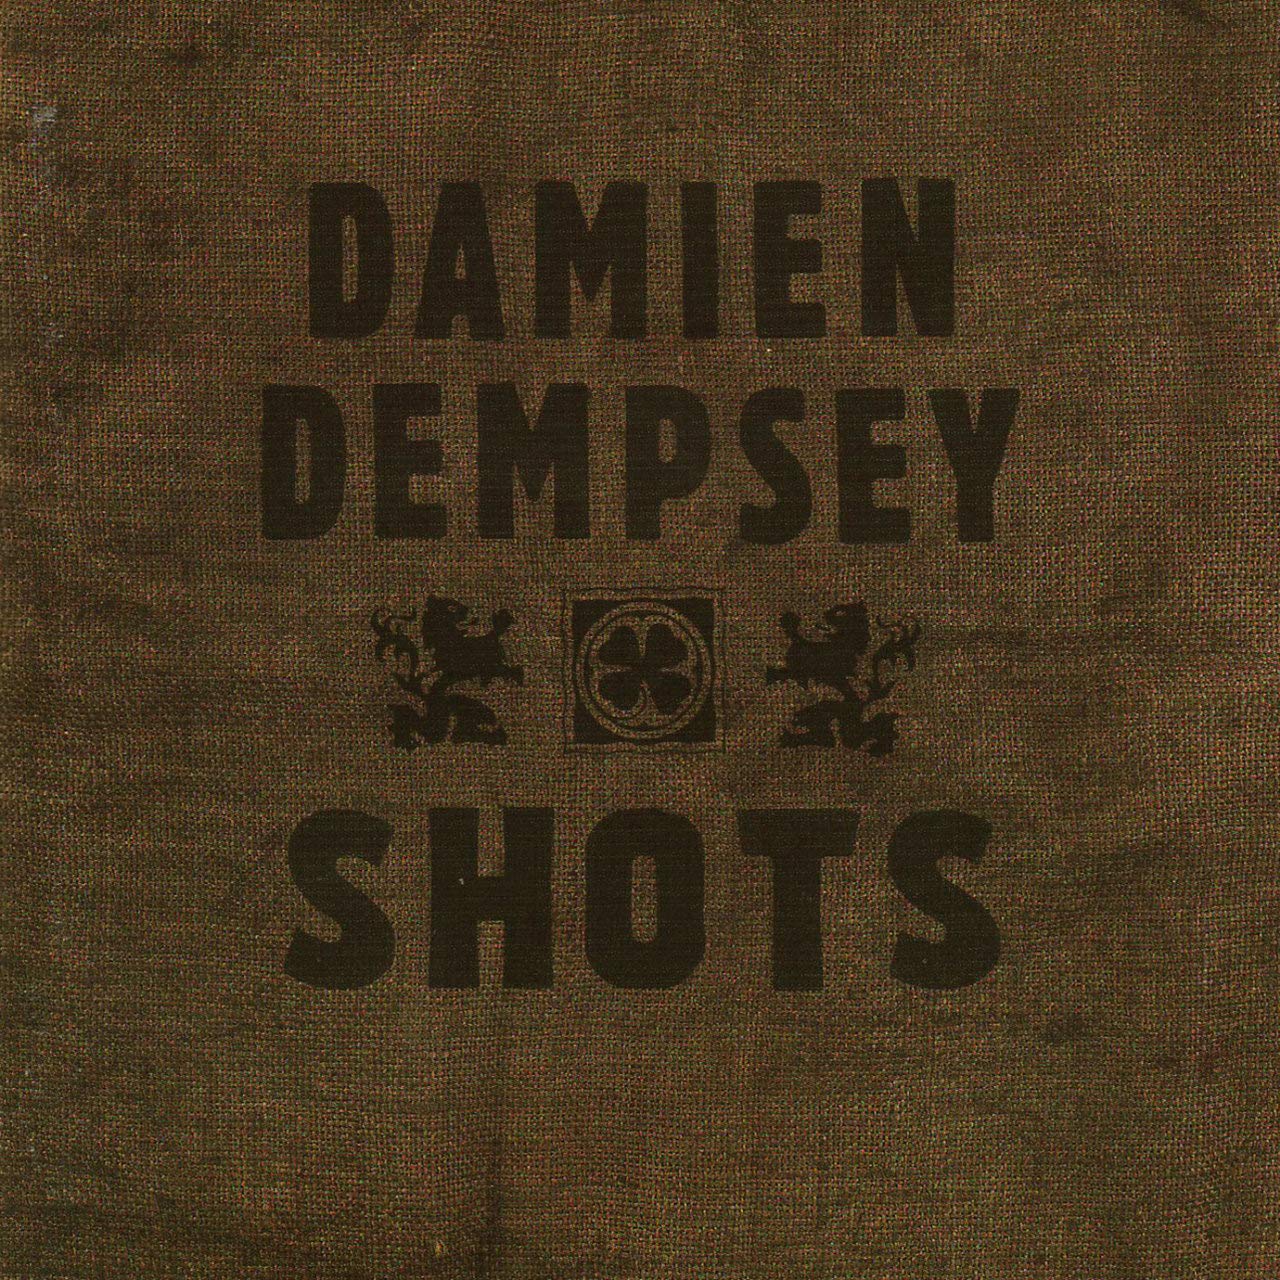 Damien Dempsey - Shots (2005)